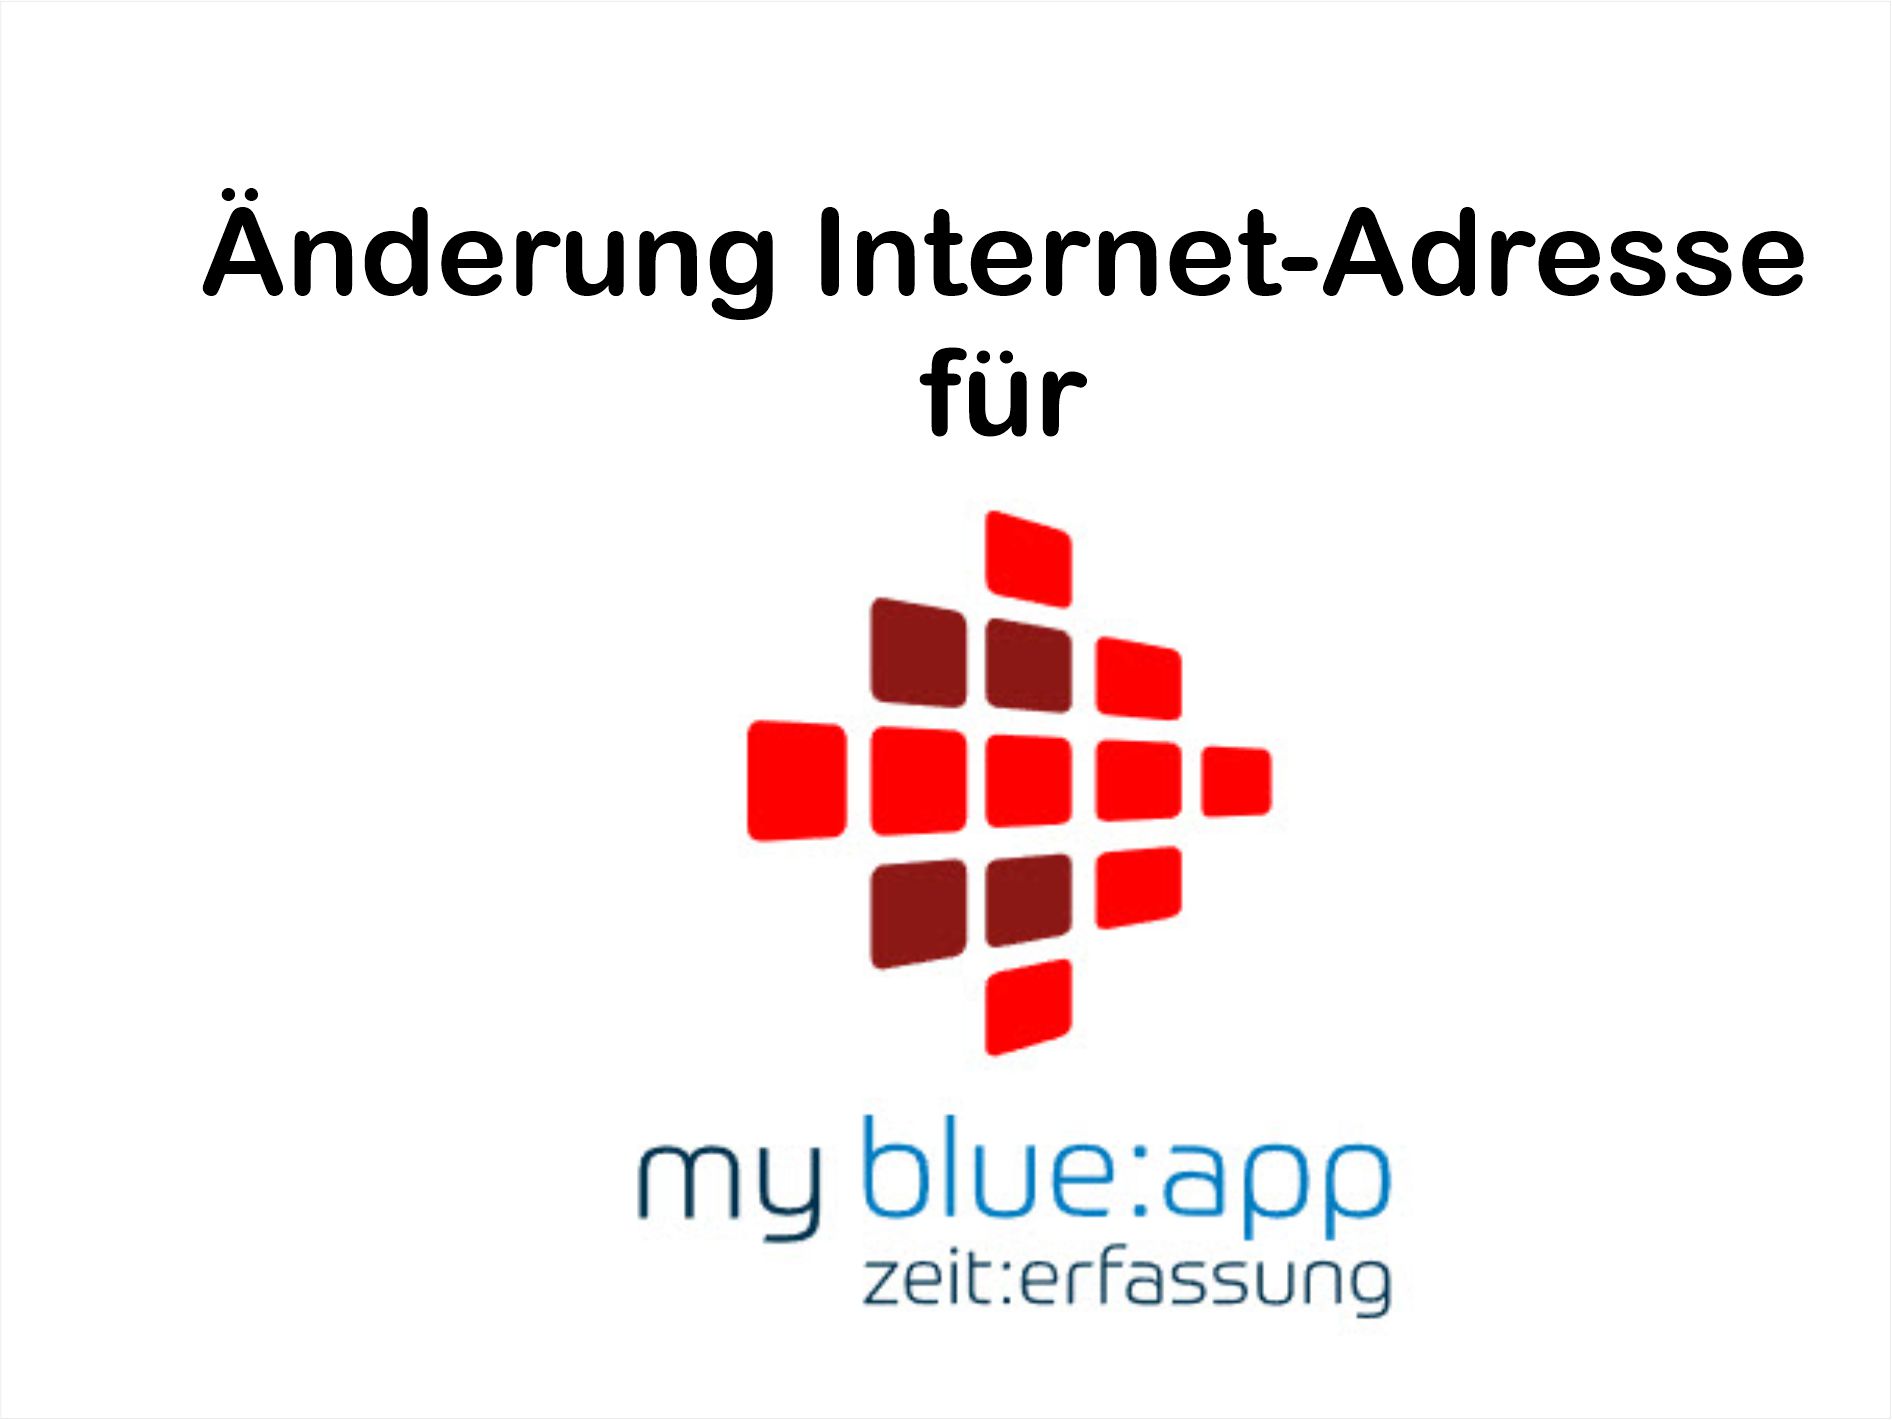 my blue:app zeit:erfassung neue Internet-Adresse